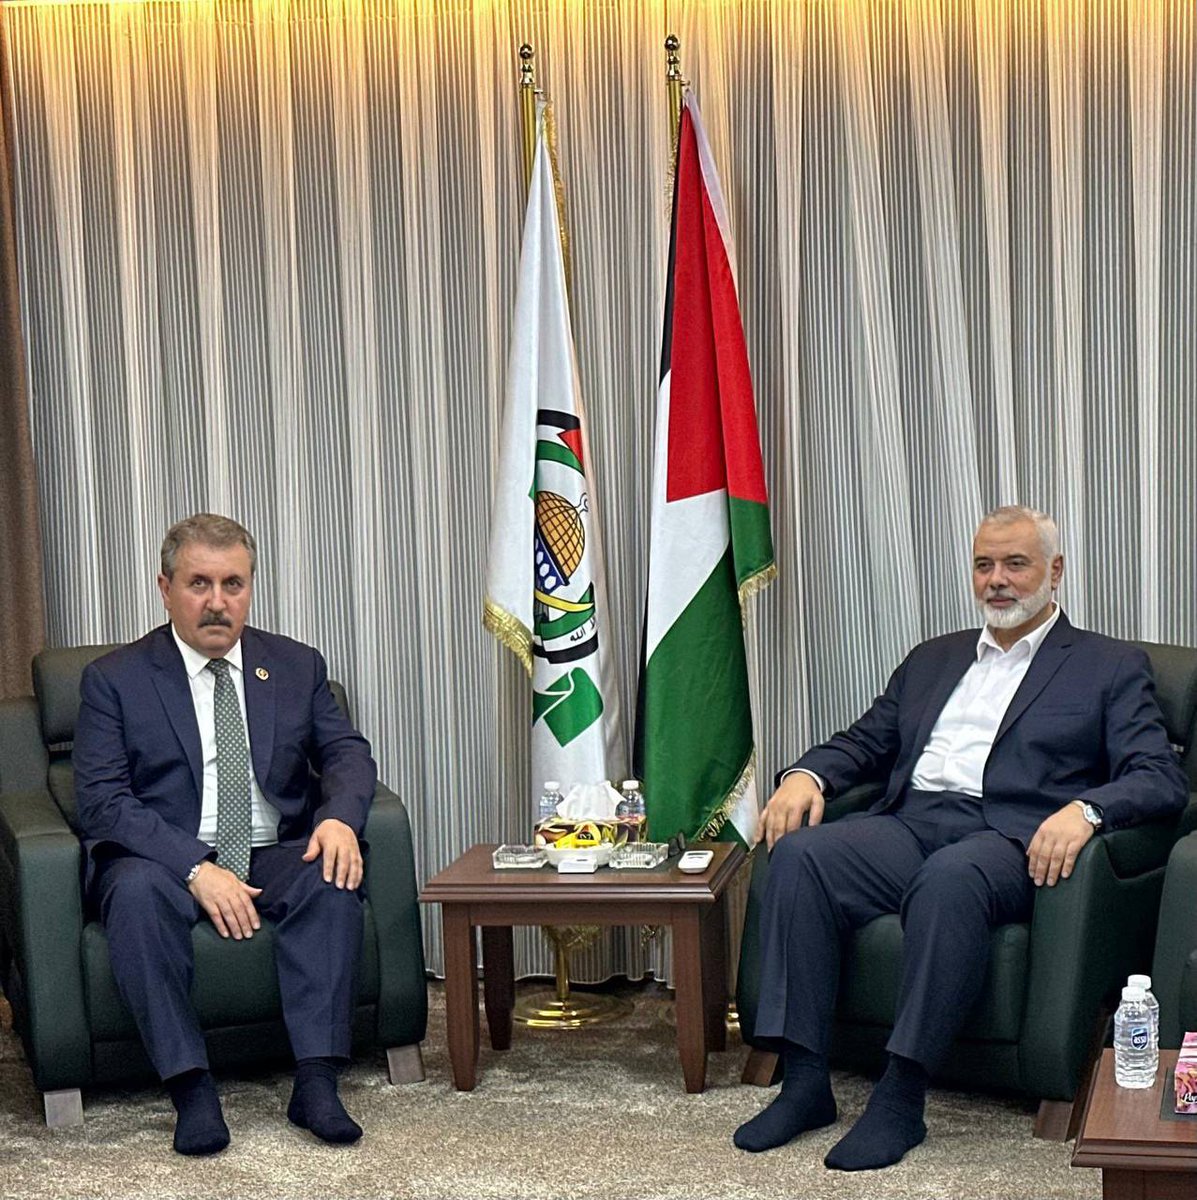 🔻#Hamas lideri İsmail Haniye ve Büyük Birlik Partisi Mustafa Destici, İstanbul’da bir araya geldi. Destici, Hamas liderinin Gazze’de şehit edilen çocukları ve torunları için taziyelerini iletti.